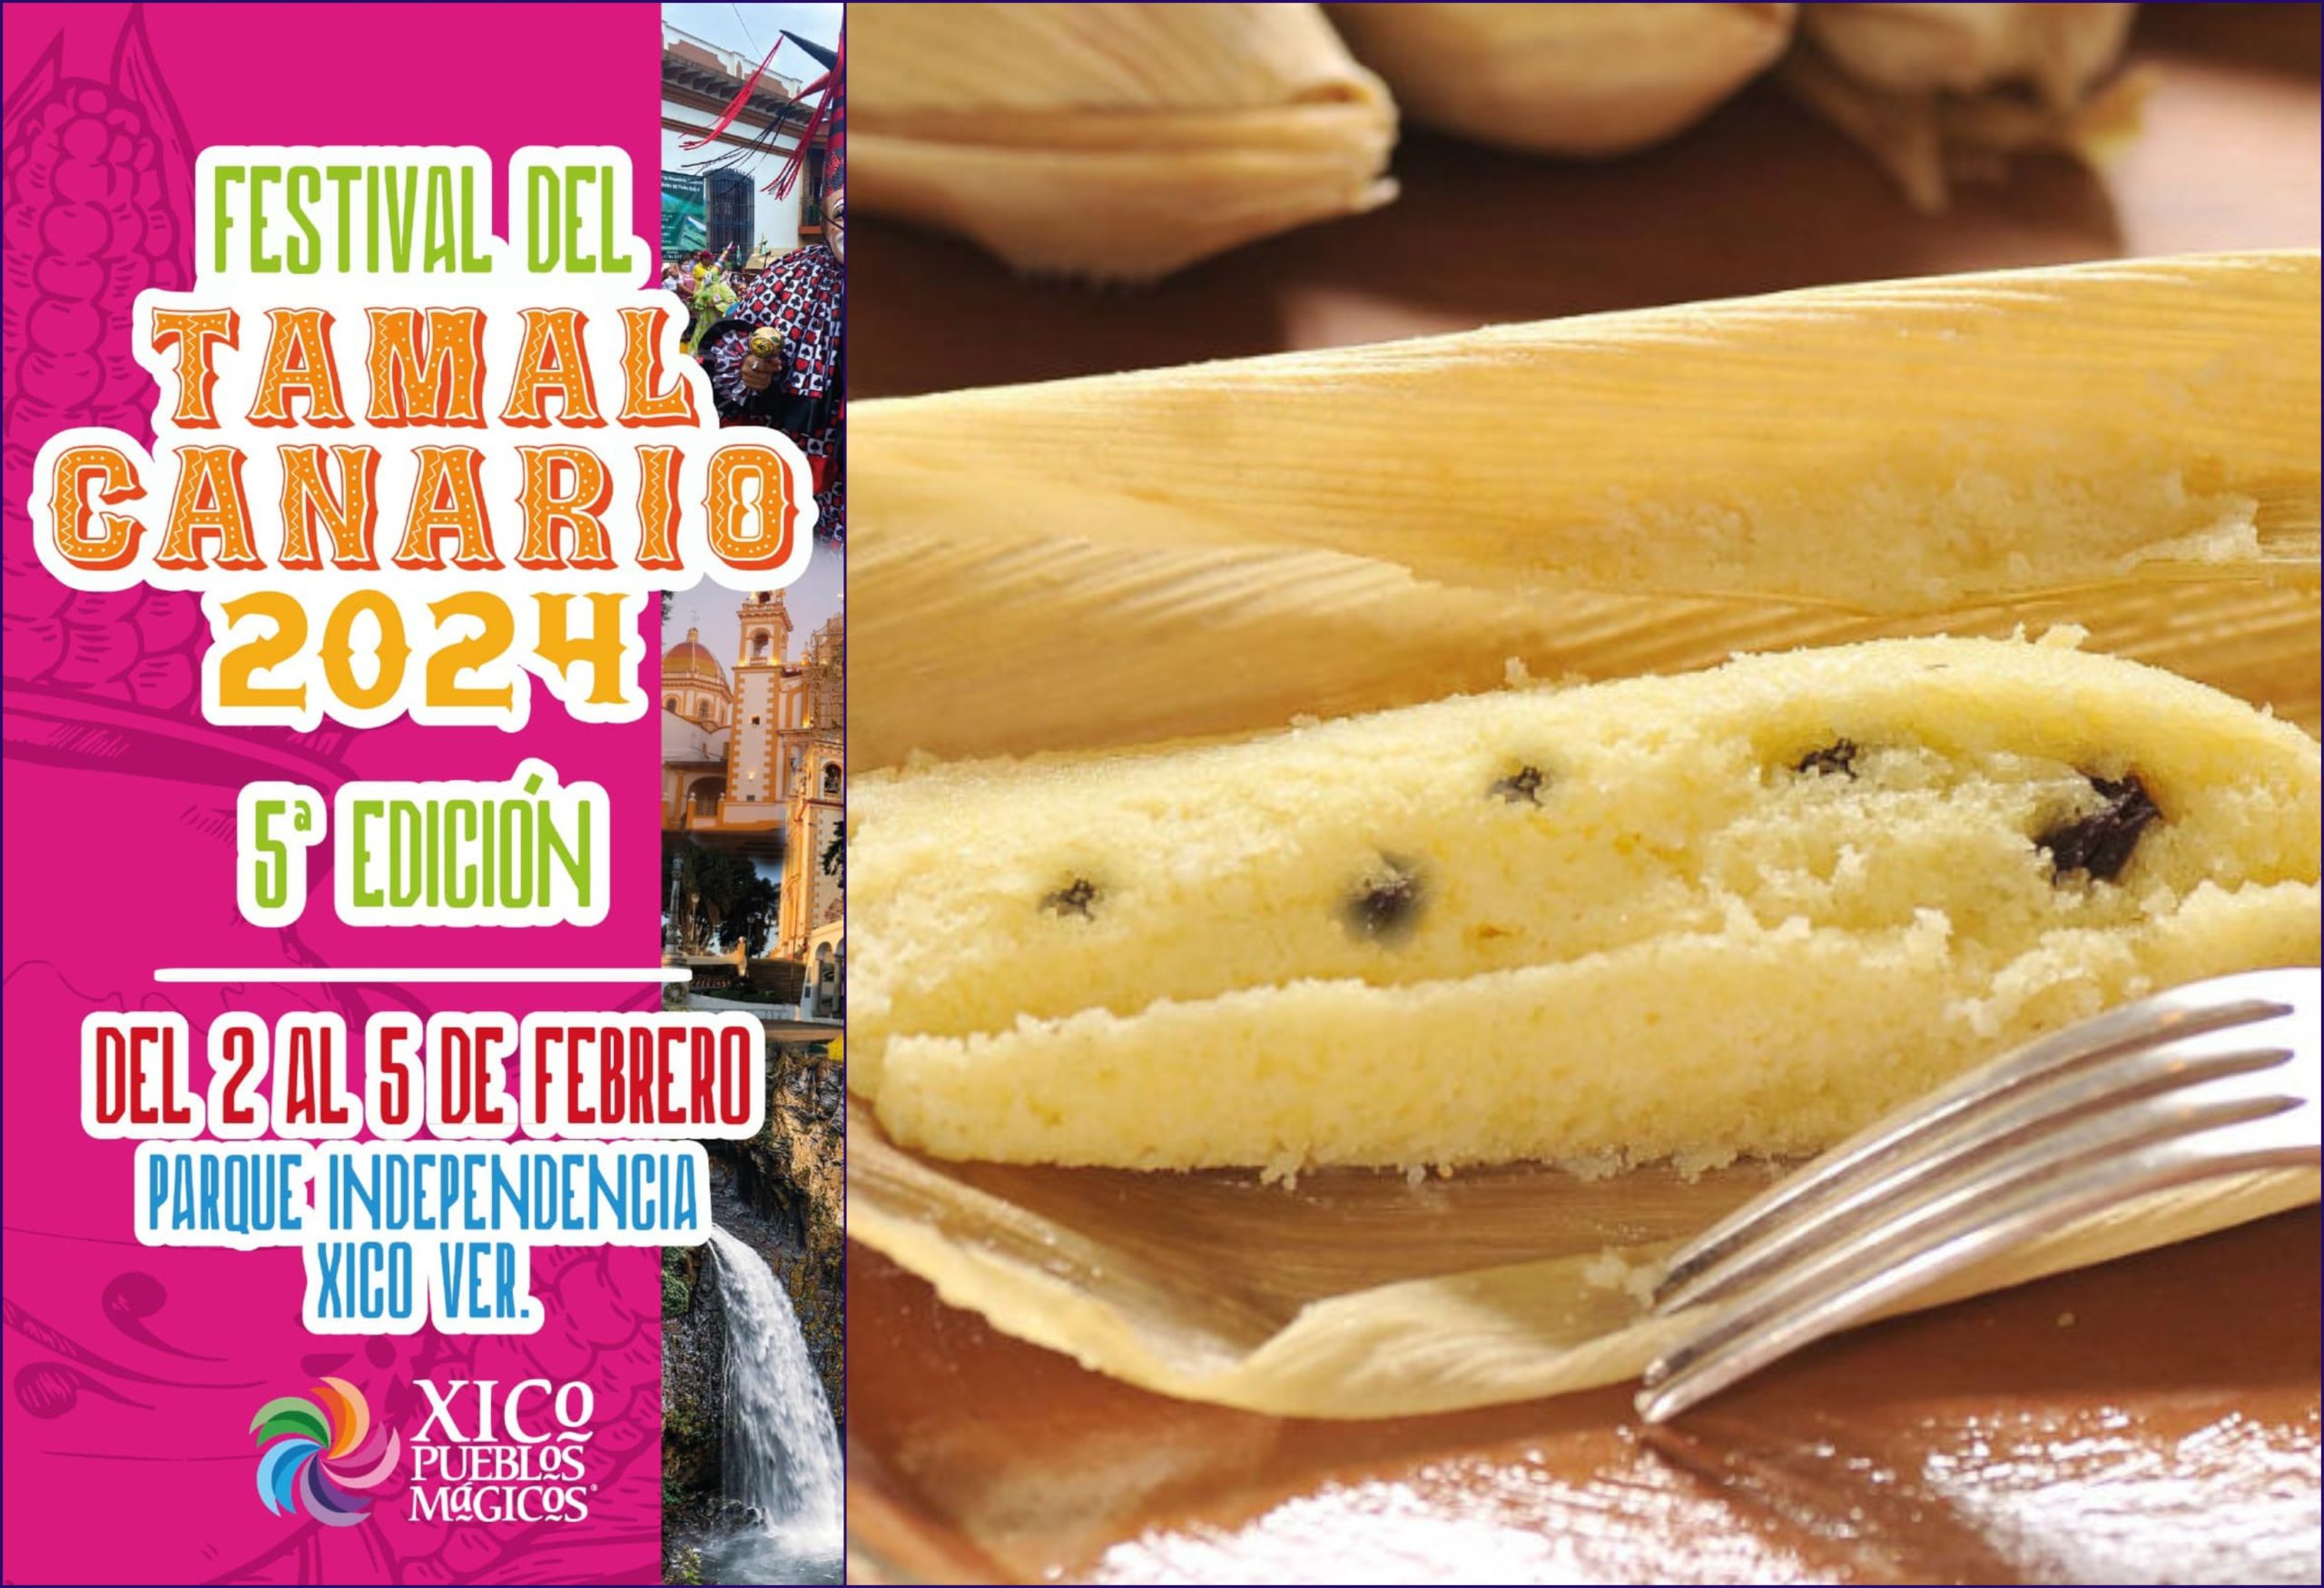 Realizarán quinta edición del “Festival del tamal canario de Xico”